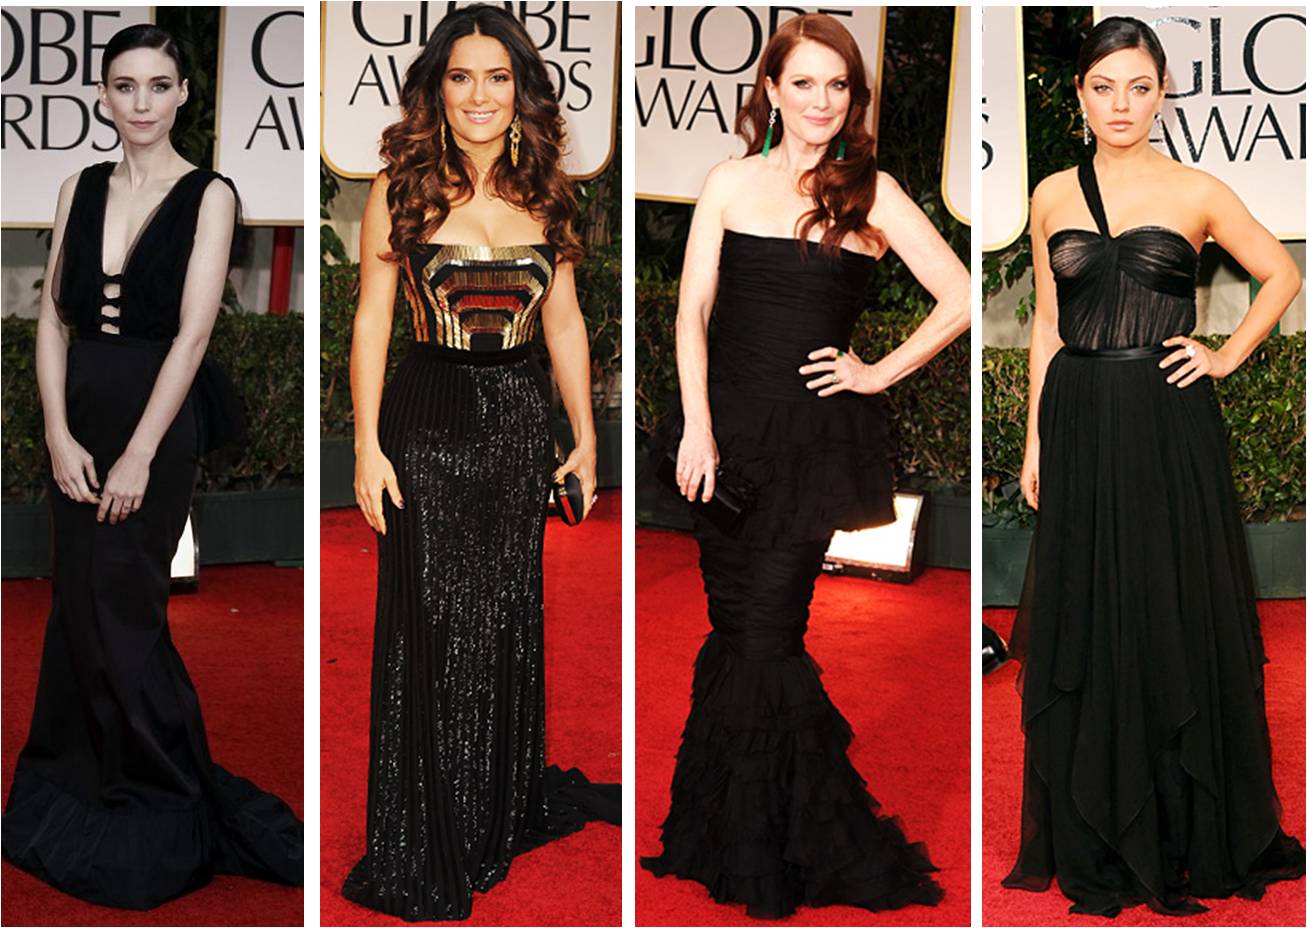 http://2.bp.blogspot.com/-nJUQg6sdkDQ/TxPJzW1rekI/AAAAAAAAIdc/J2J5dVoVFzw/s1600/2012+Golden+Globes+Red+Carpet+Best+Dressed+Black+Dresses.jpg